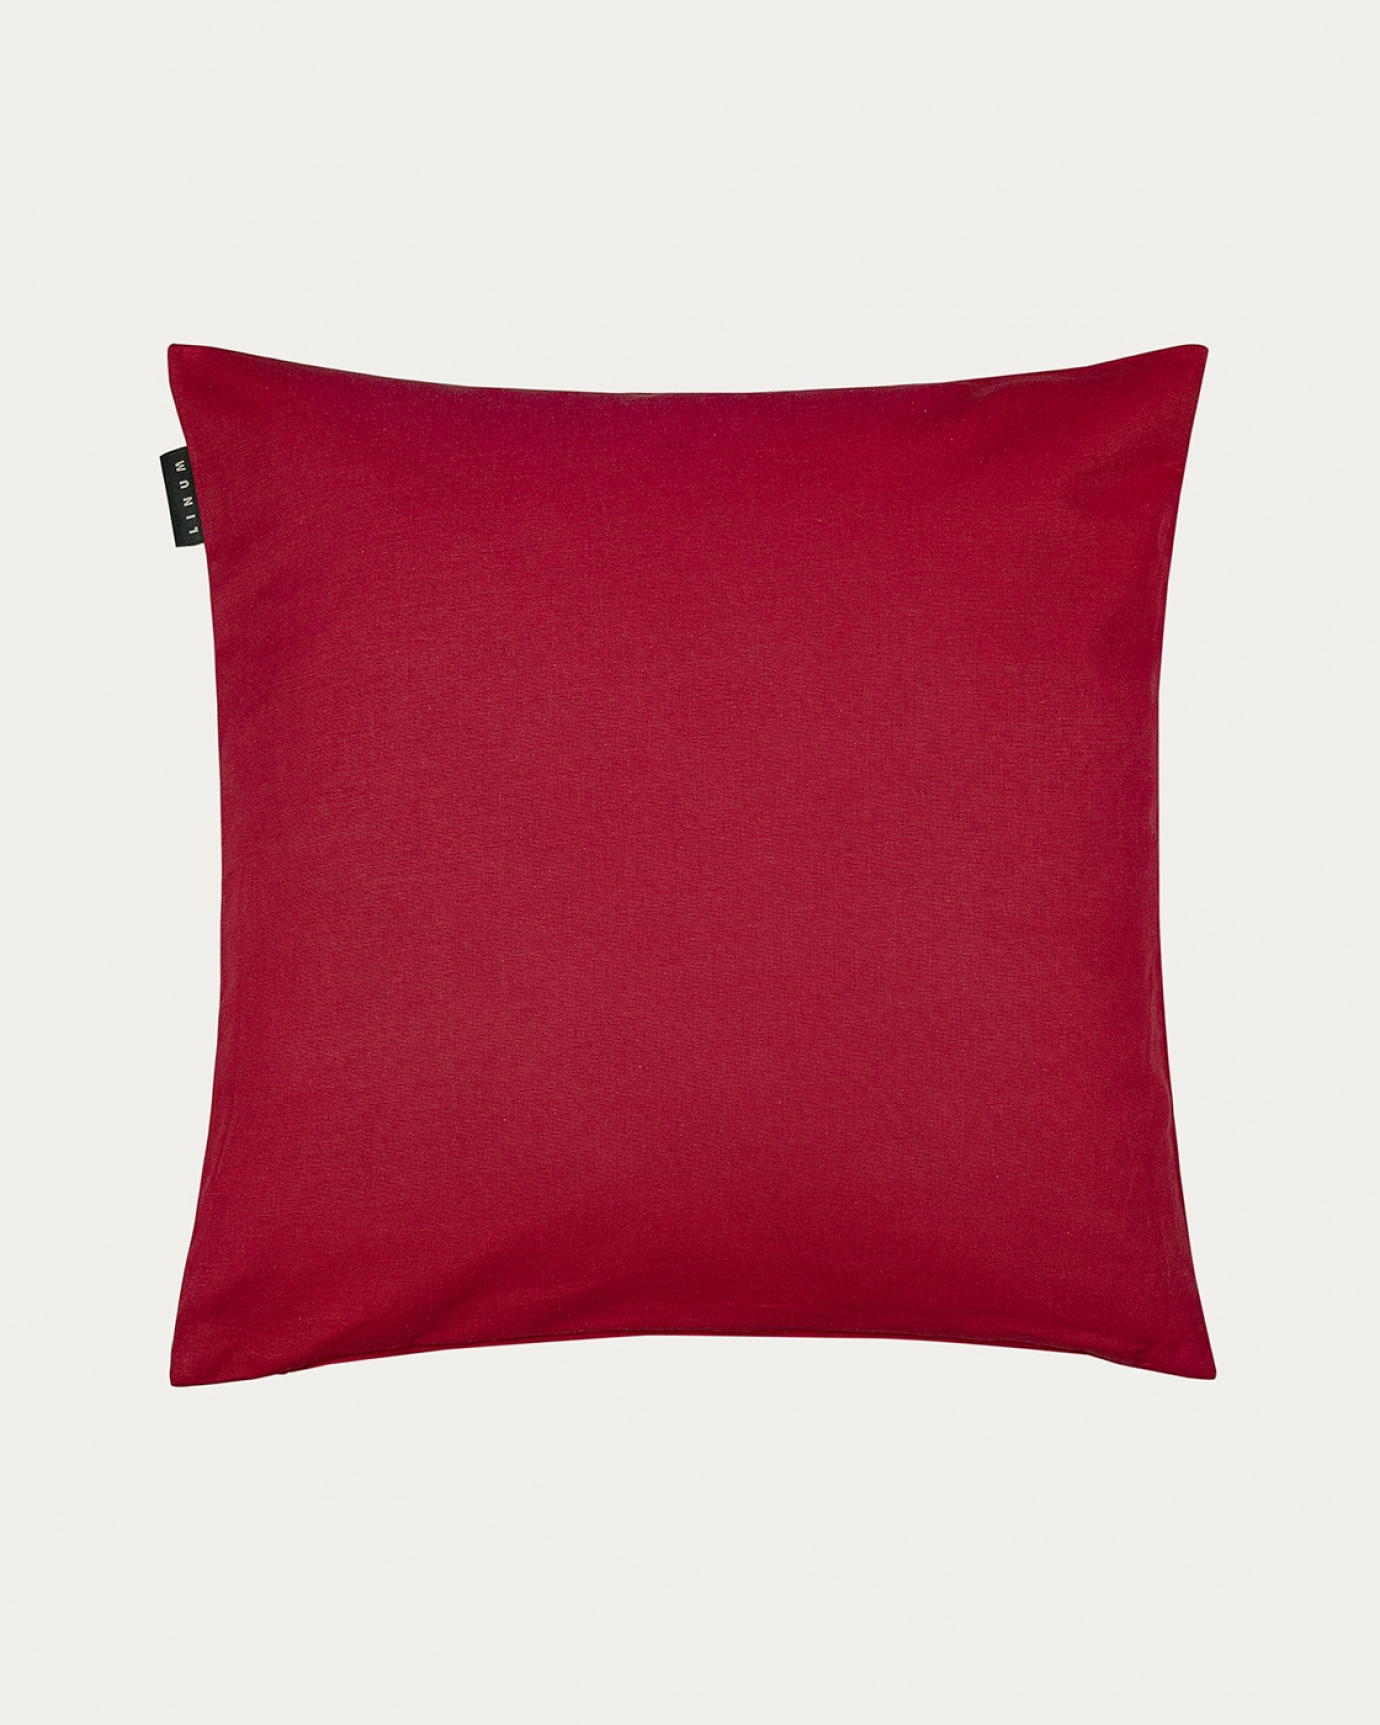 Produktbild röd ANNABELL kuddfodral av mjuk bomull från LINUM DESIGN. Storlek 50x50 cm.